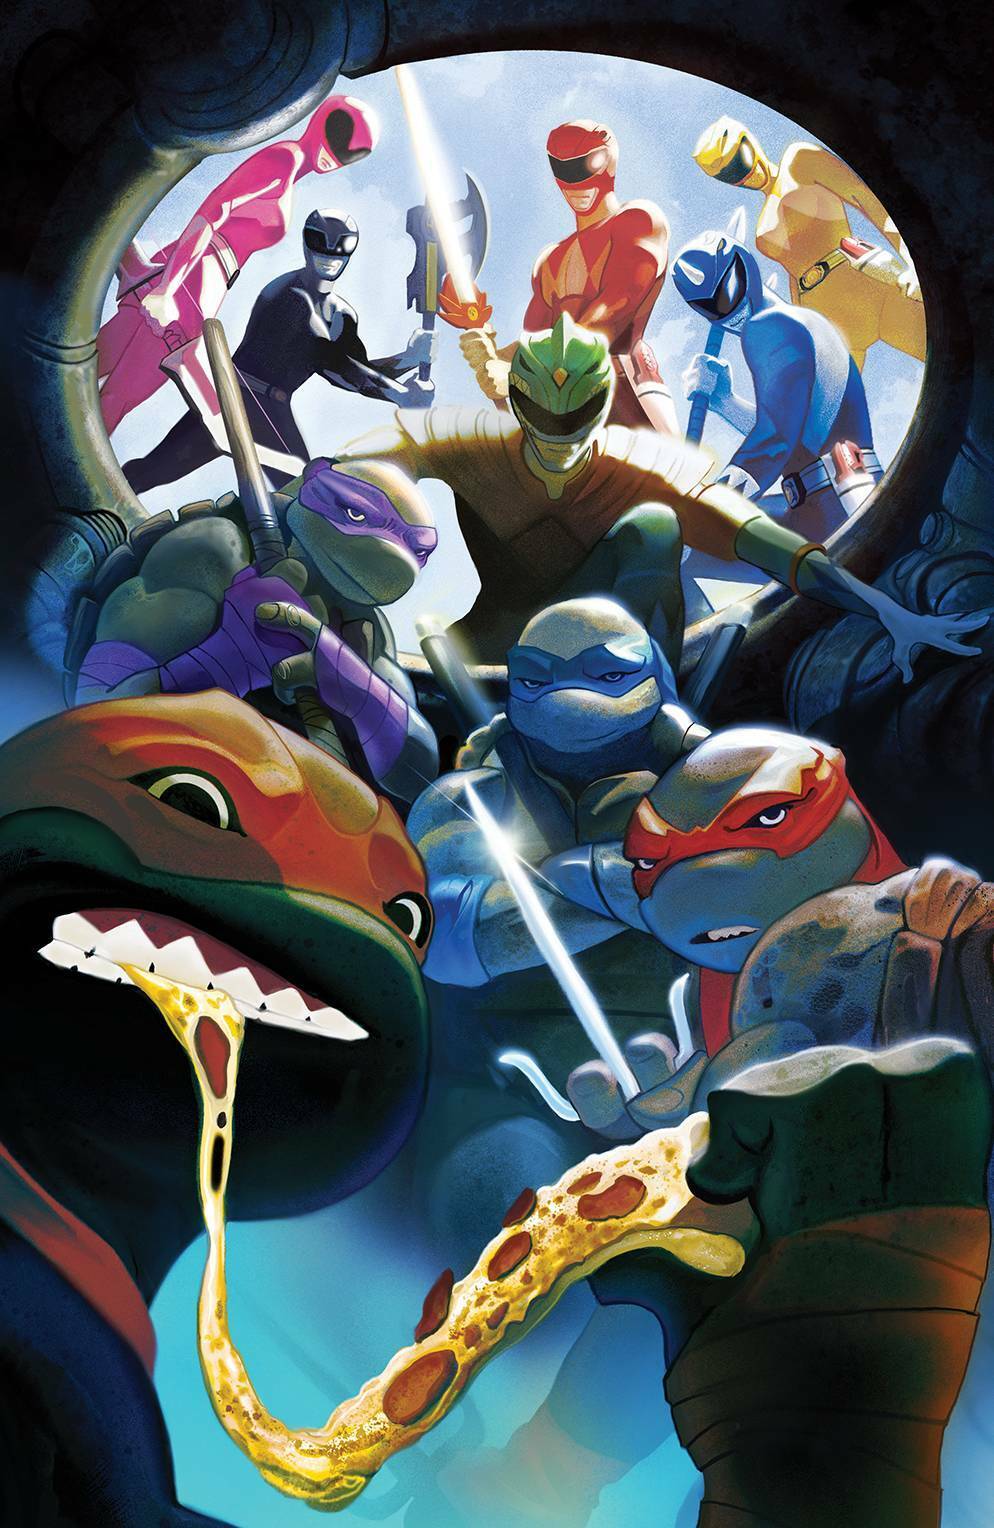 Power Rangers & Teenage Mutant Ninja Turtles #5 Del Mundo Variant A Signed